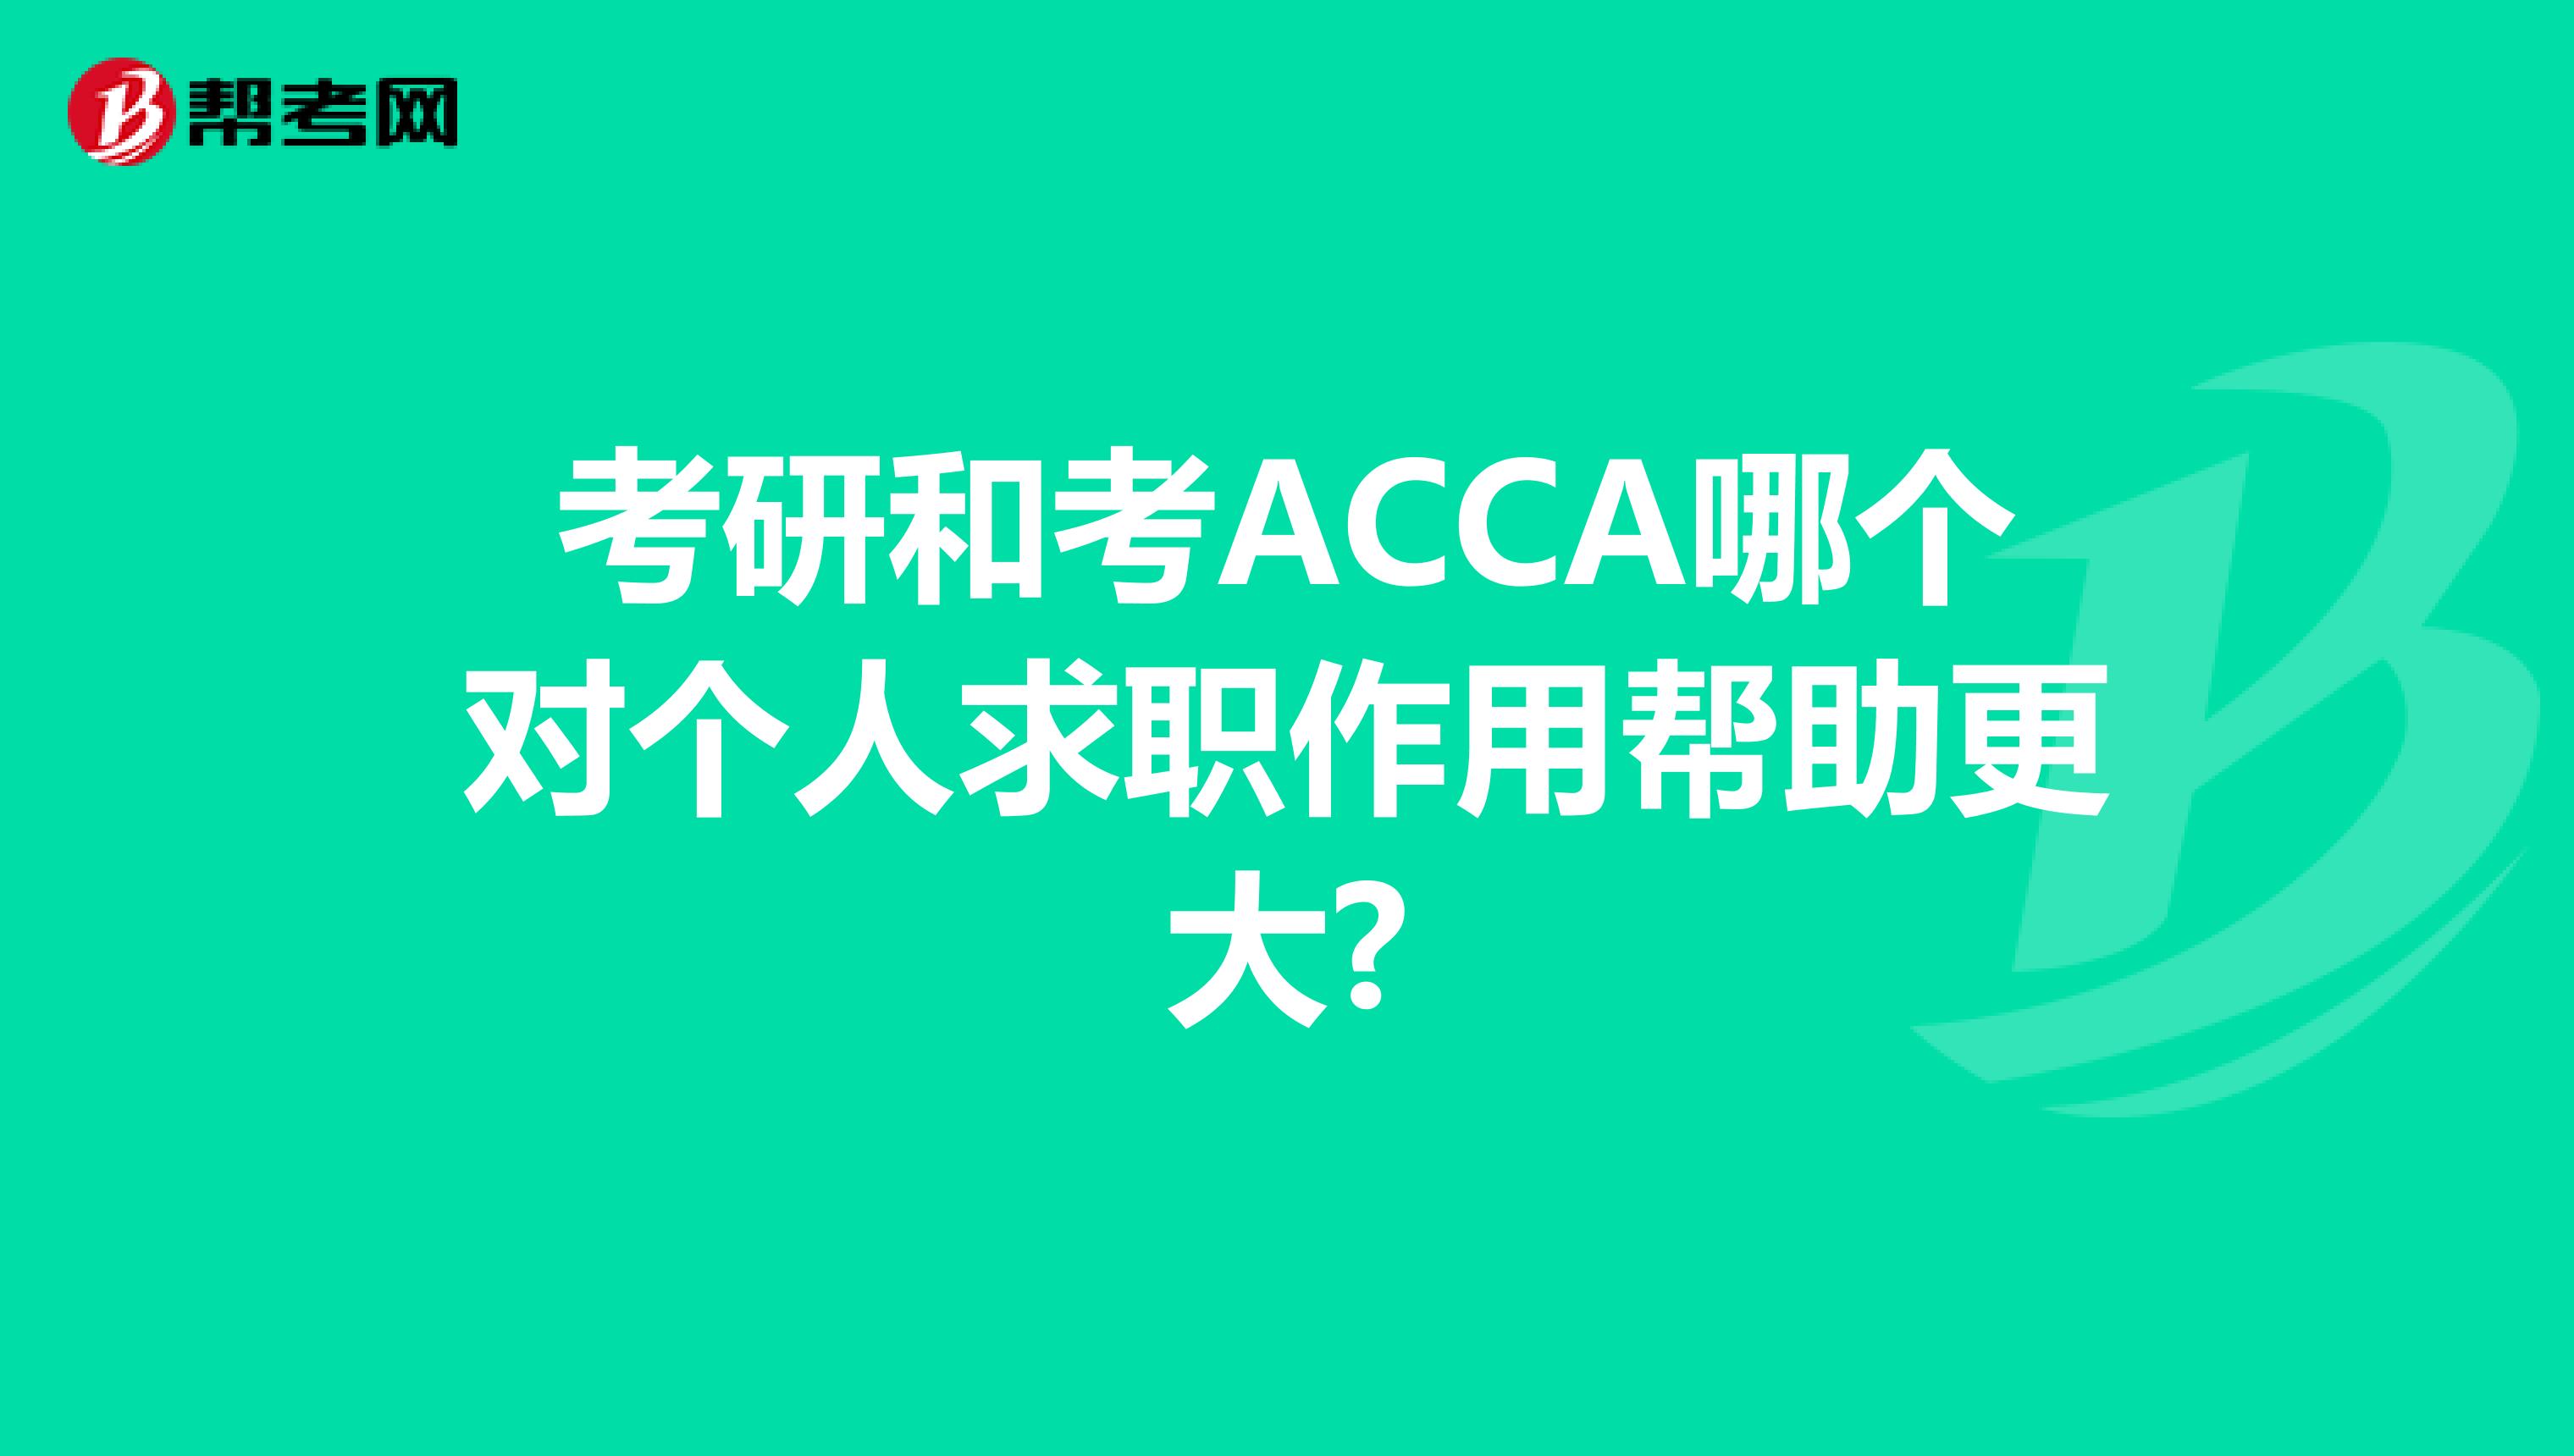 考研和考ACCA哪个对个人求职作用帮助更大?